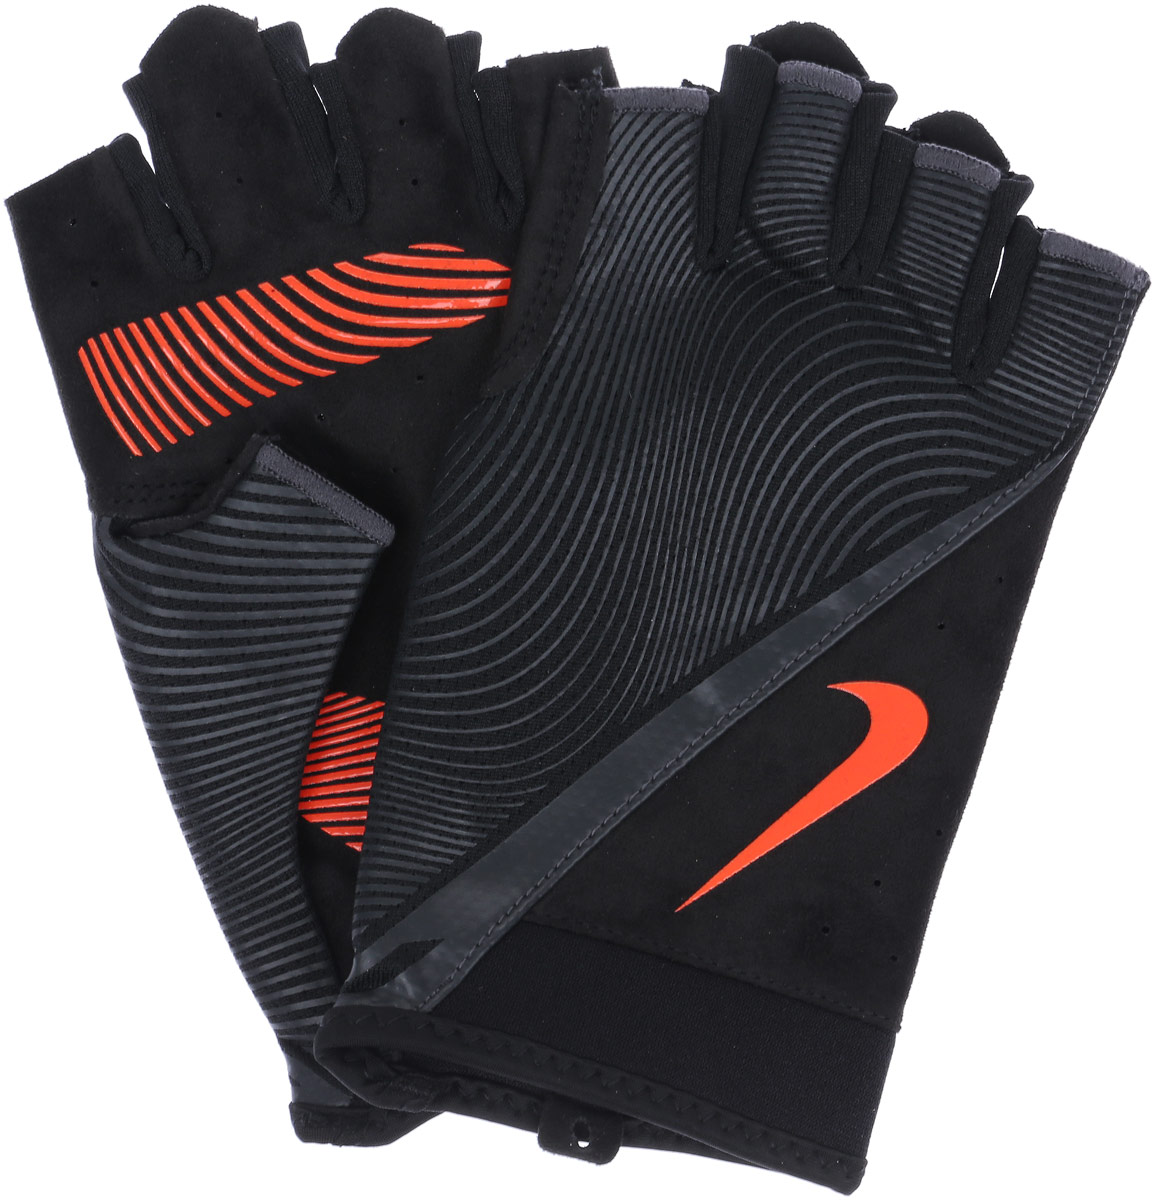 Перчатки тренировочные мужские Nike, цвет:черный, серый, красный. Размер M